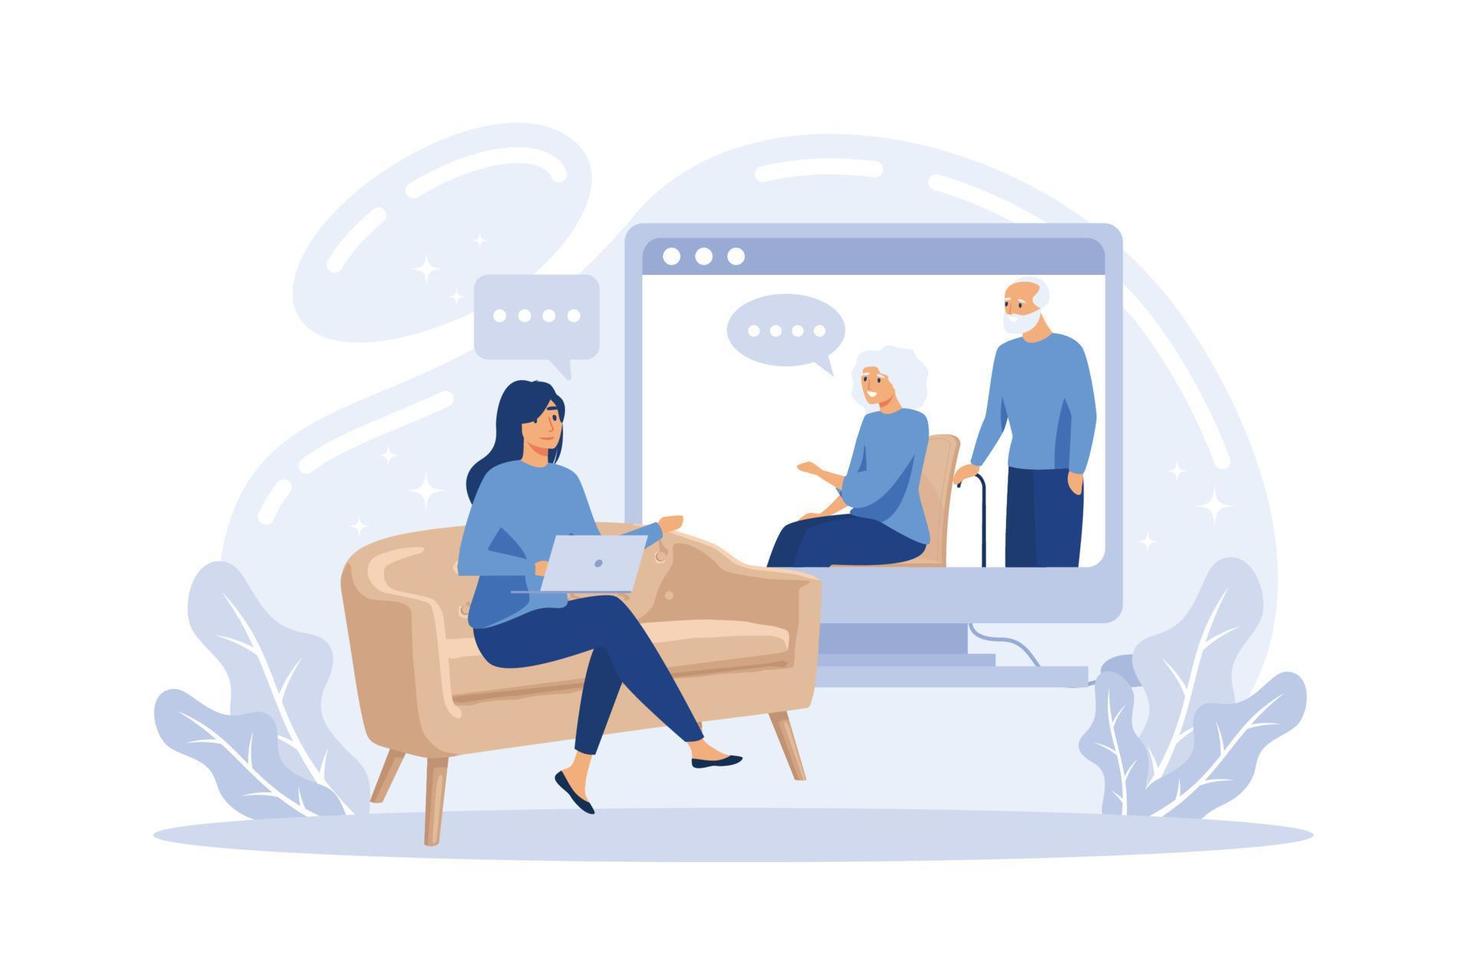 Psicóloga en línea y sesión de terapia de pareja - mujer terapeuta virtual que brinda asesoramiento matrimonial a caricaturistas en casa desde la pantalla, vector